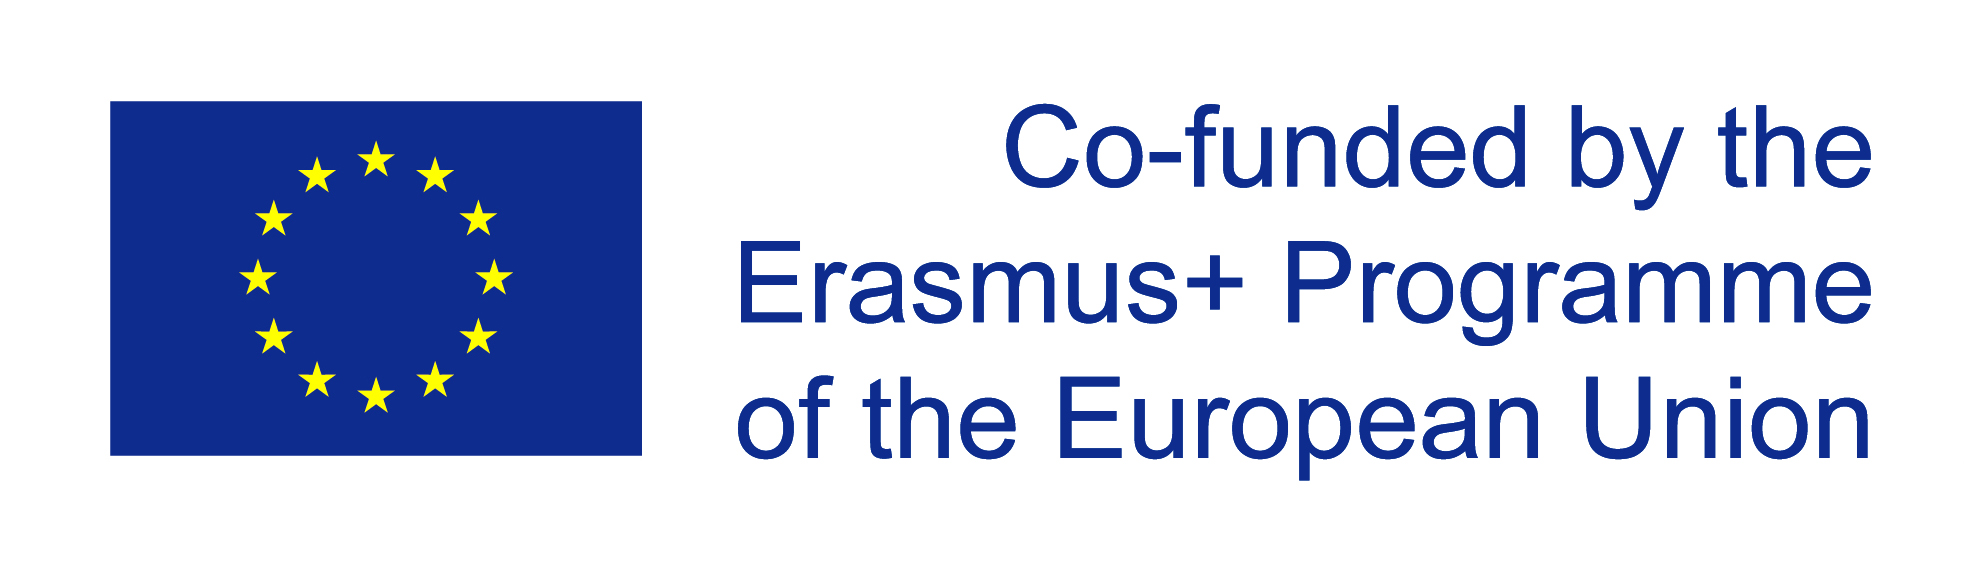 erasmus-funding.jpg